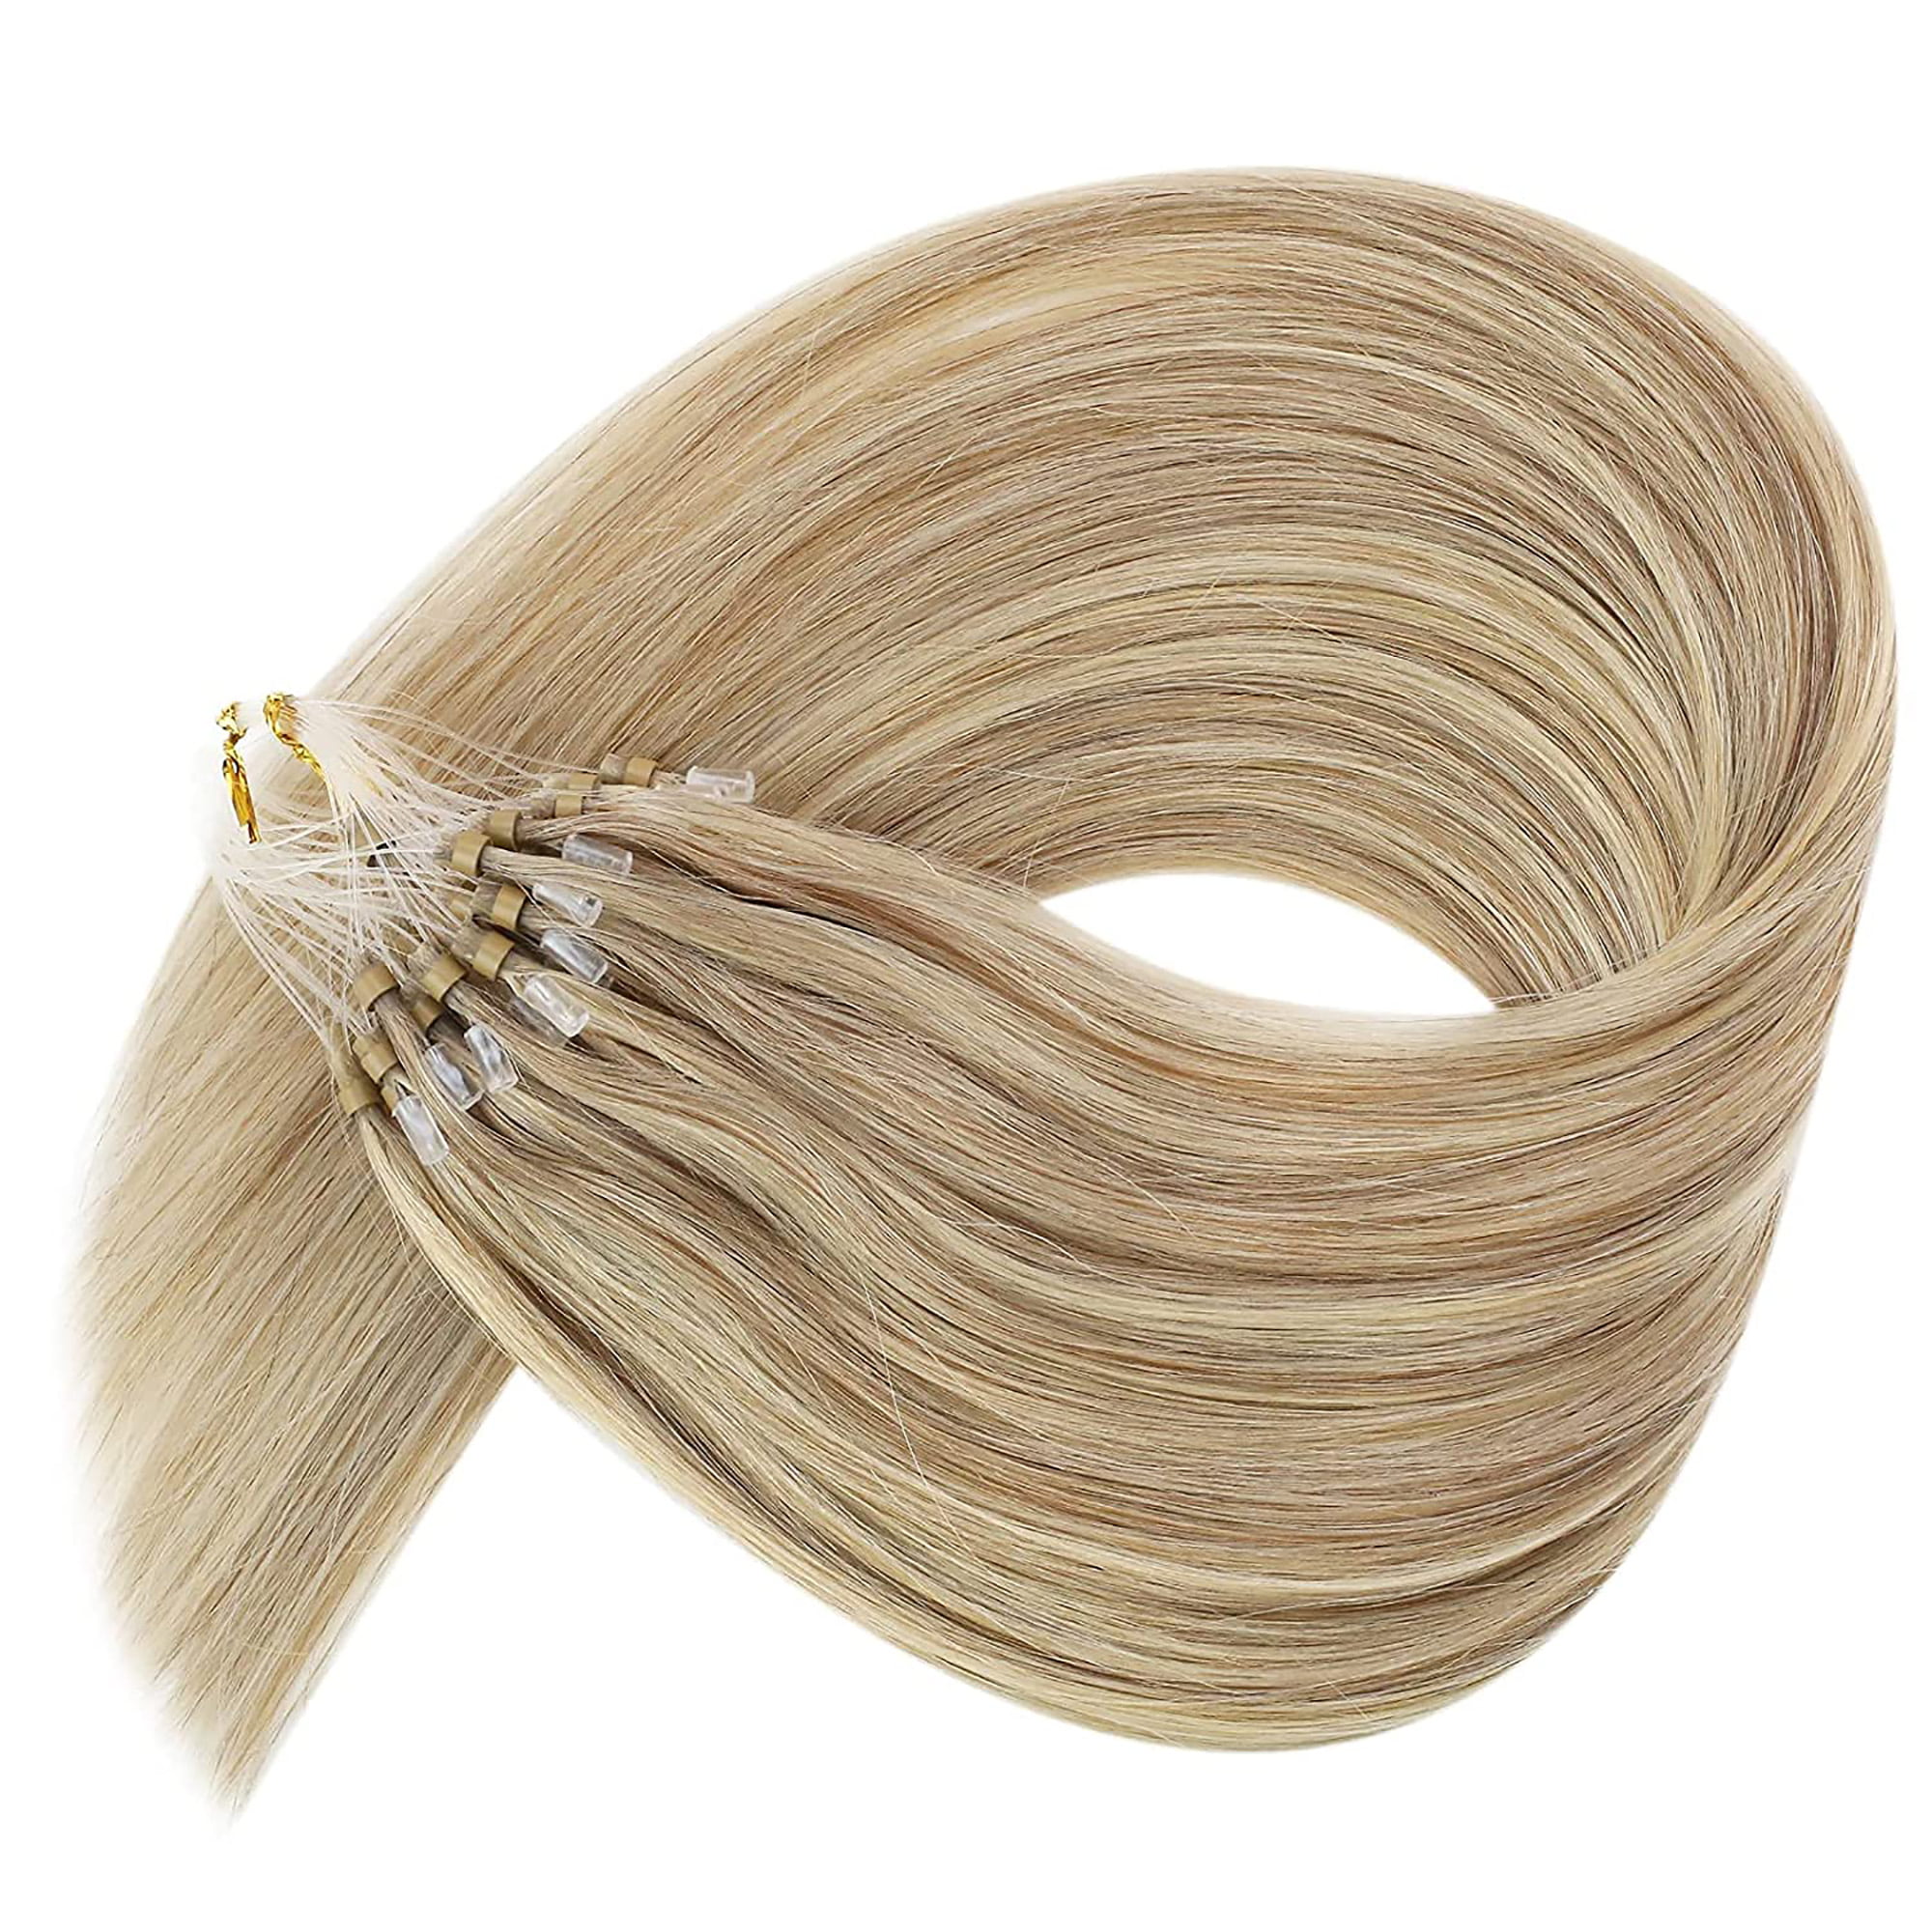 Pulling Loop-gold metal grip for Hair Extensions • Mari Ari Wigs